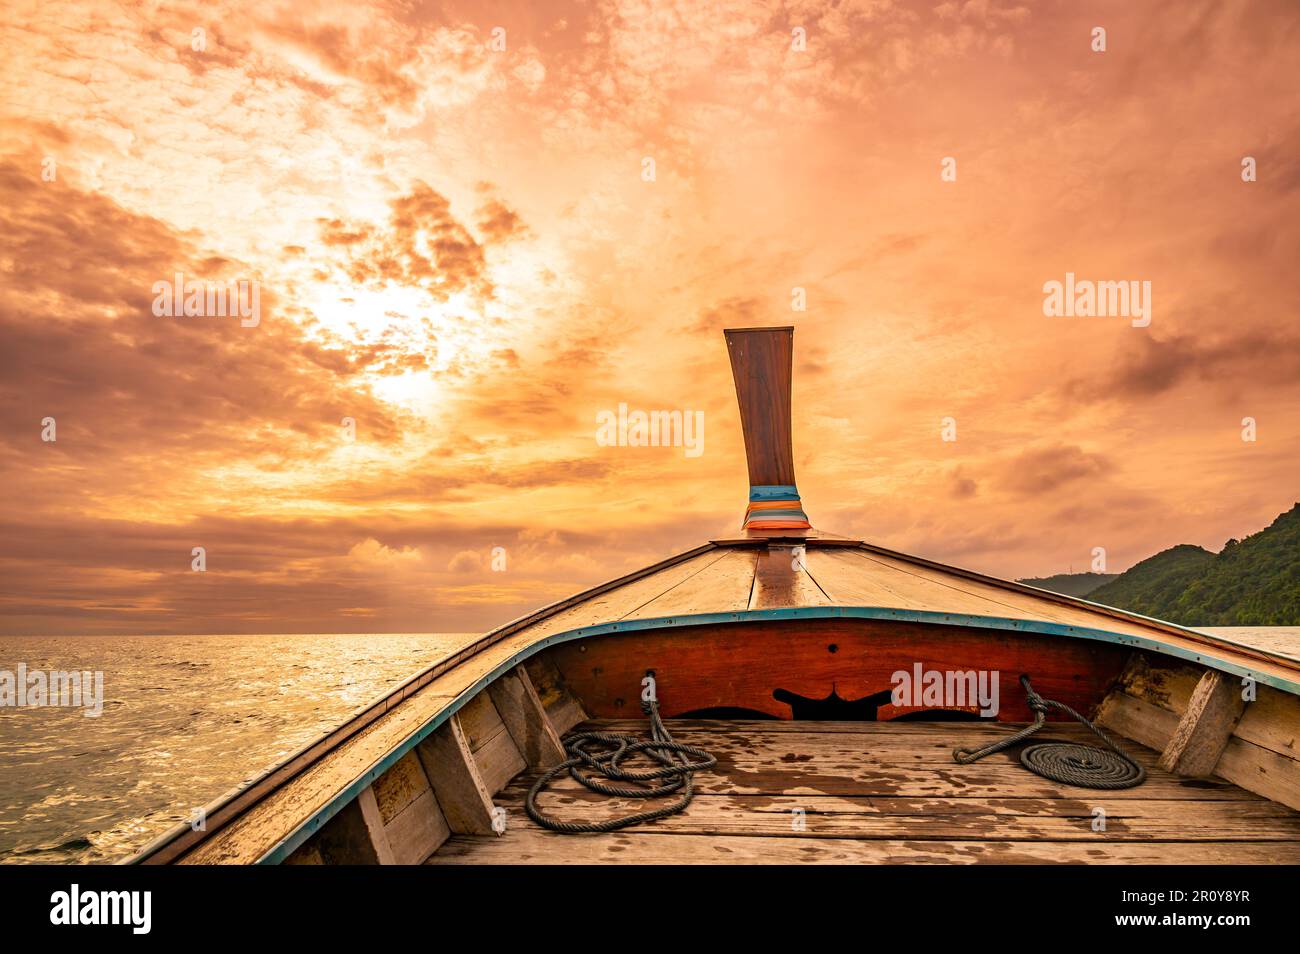 Vue depuis le long bateau à queue jusqu'au coucher de soleil spectaculaire au-dessus de l'océan. Concept de vacances exotiques dans le paradis tropical. Photo prise en Thaïlande près de Ko Banque D'Images